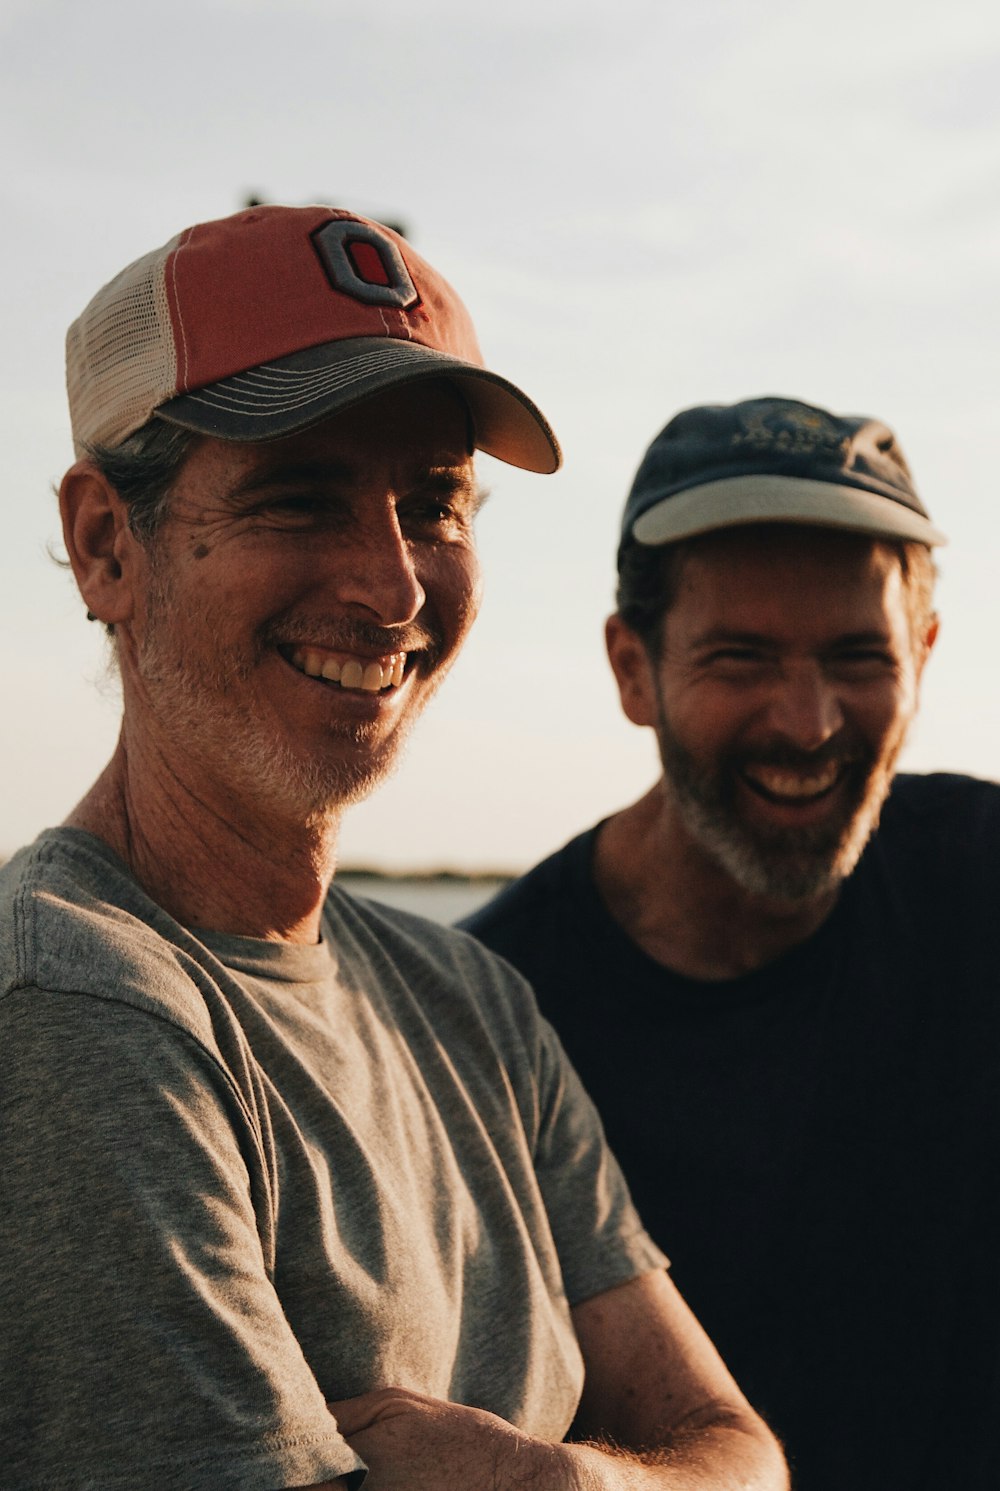 two men wearing baseball caps laughing